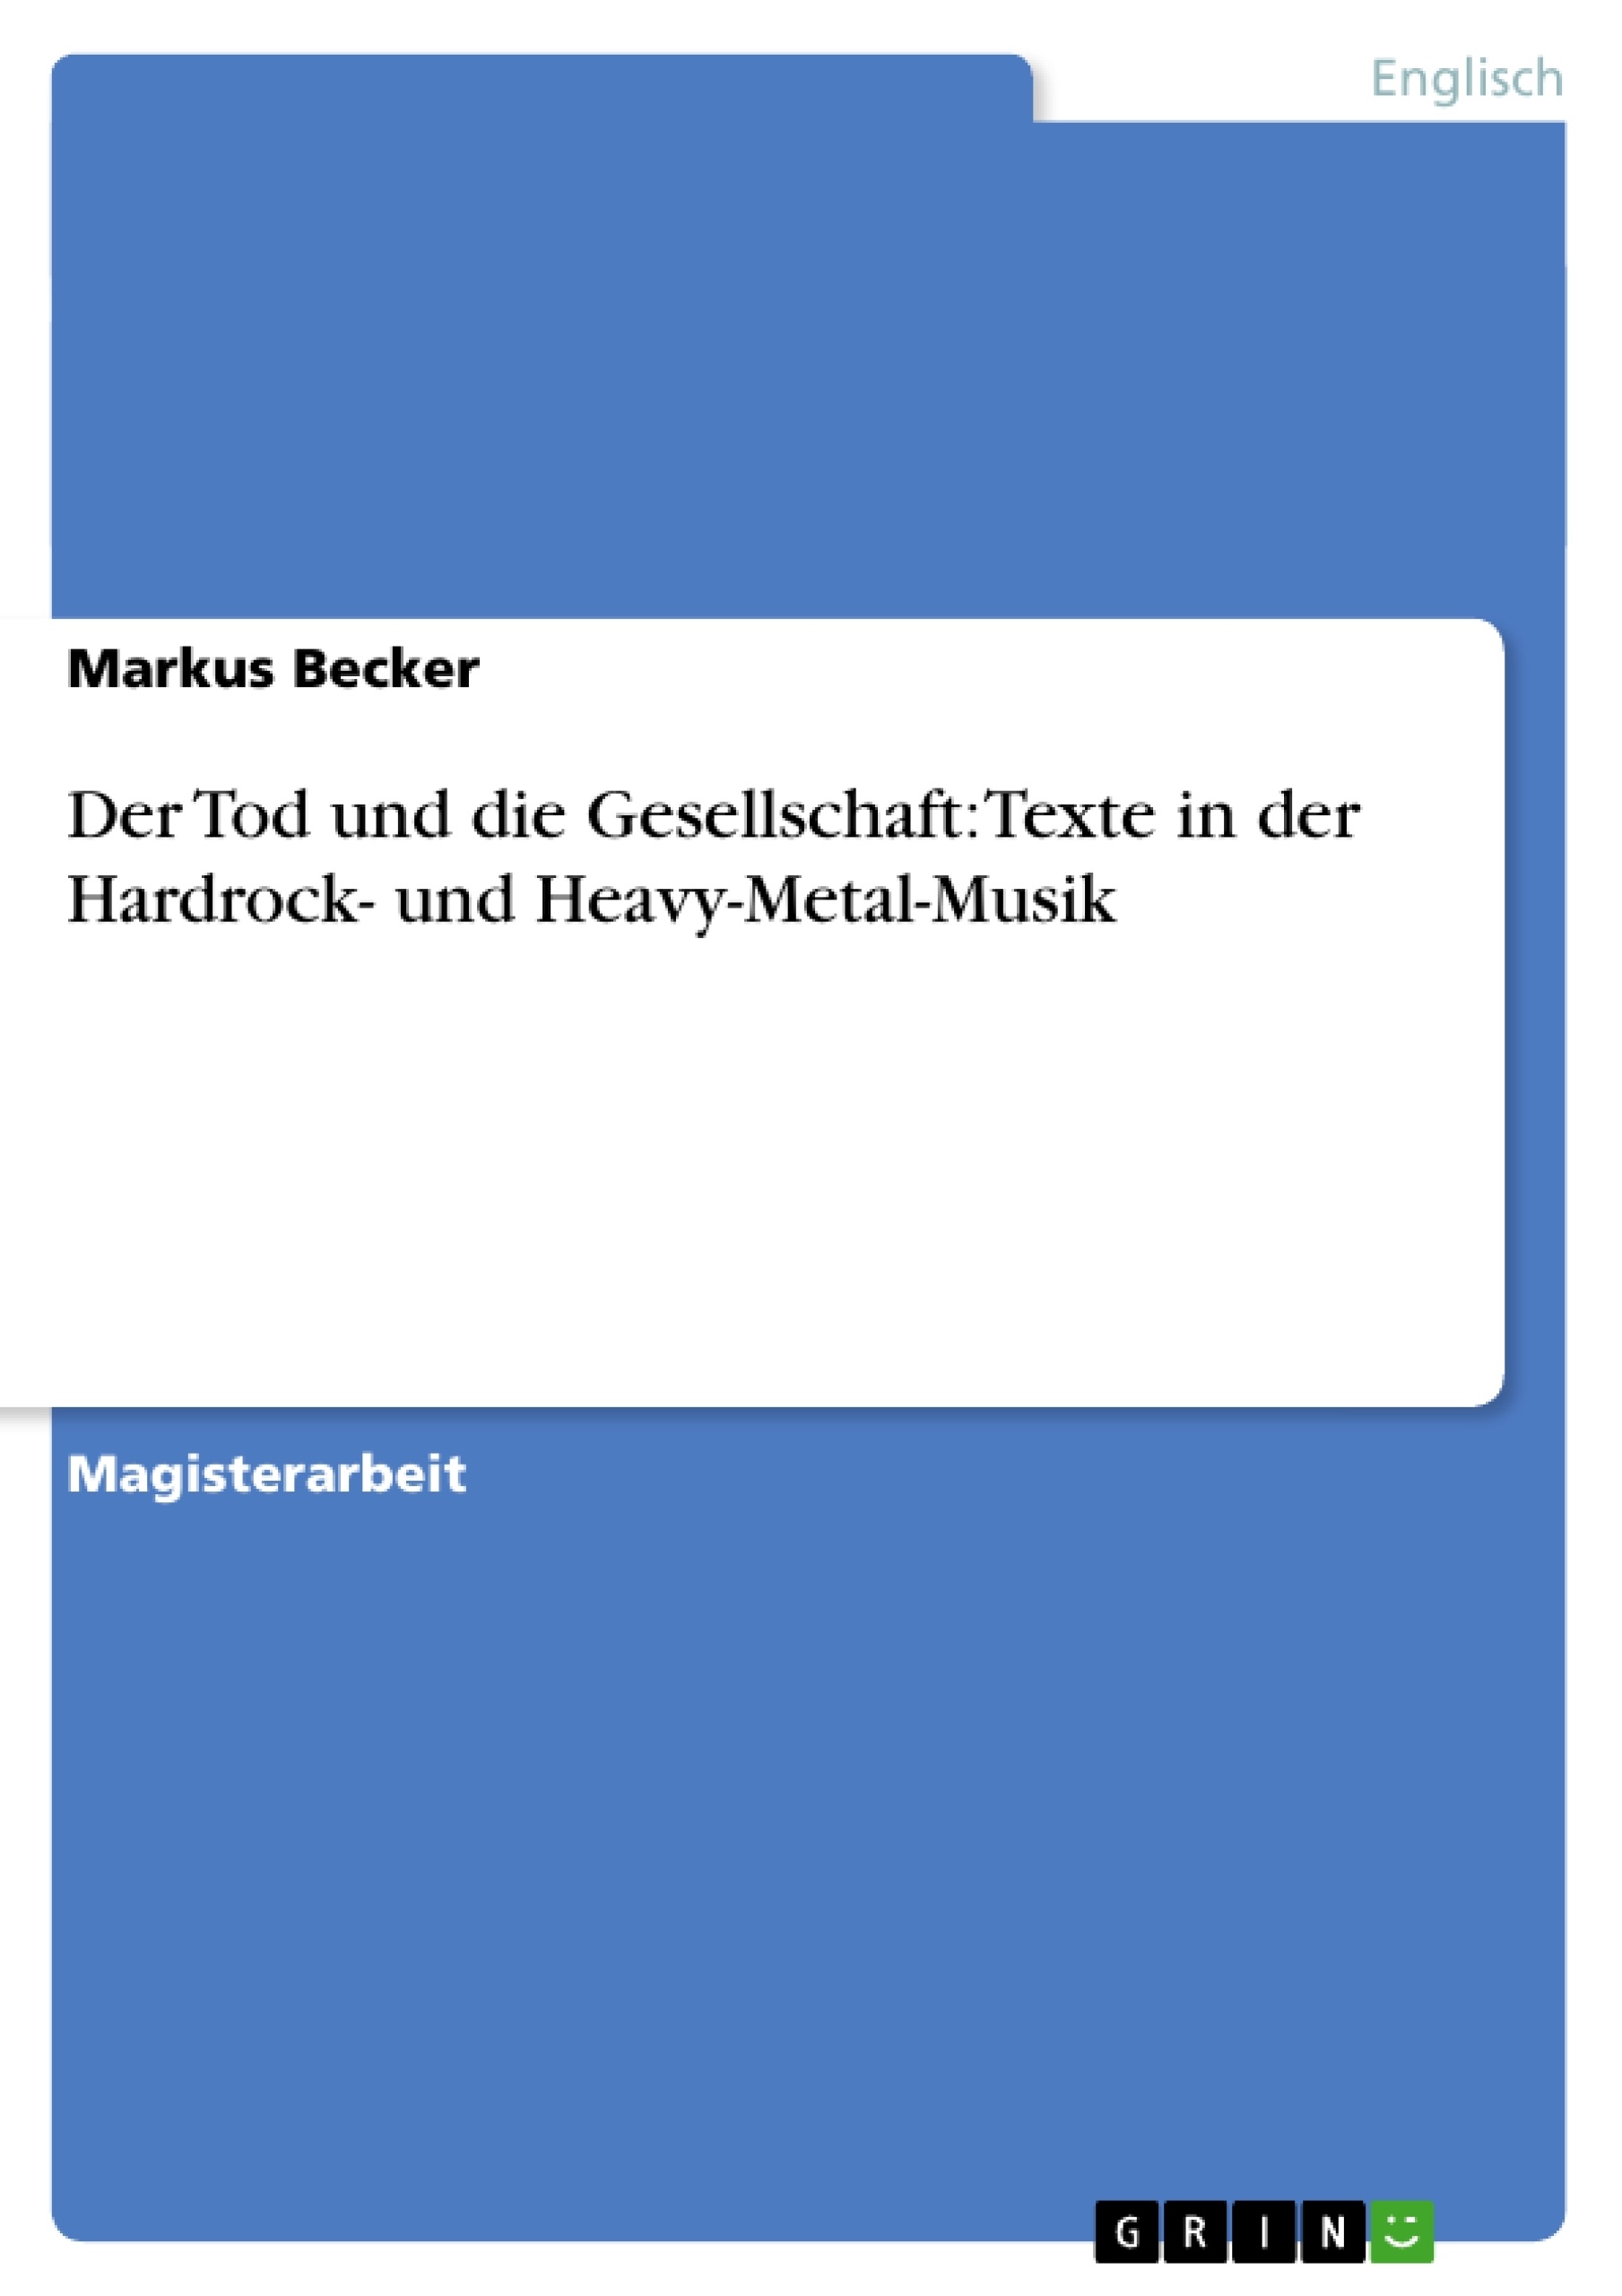 Título: Der Tod und die Gesellschaft: Texte in der Hardrock- und Heavy-Metal-Musik